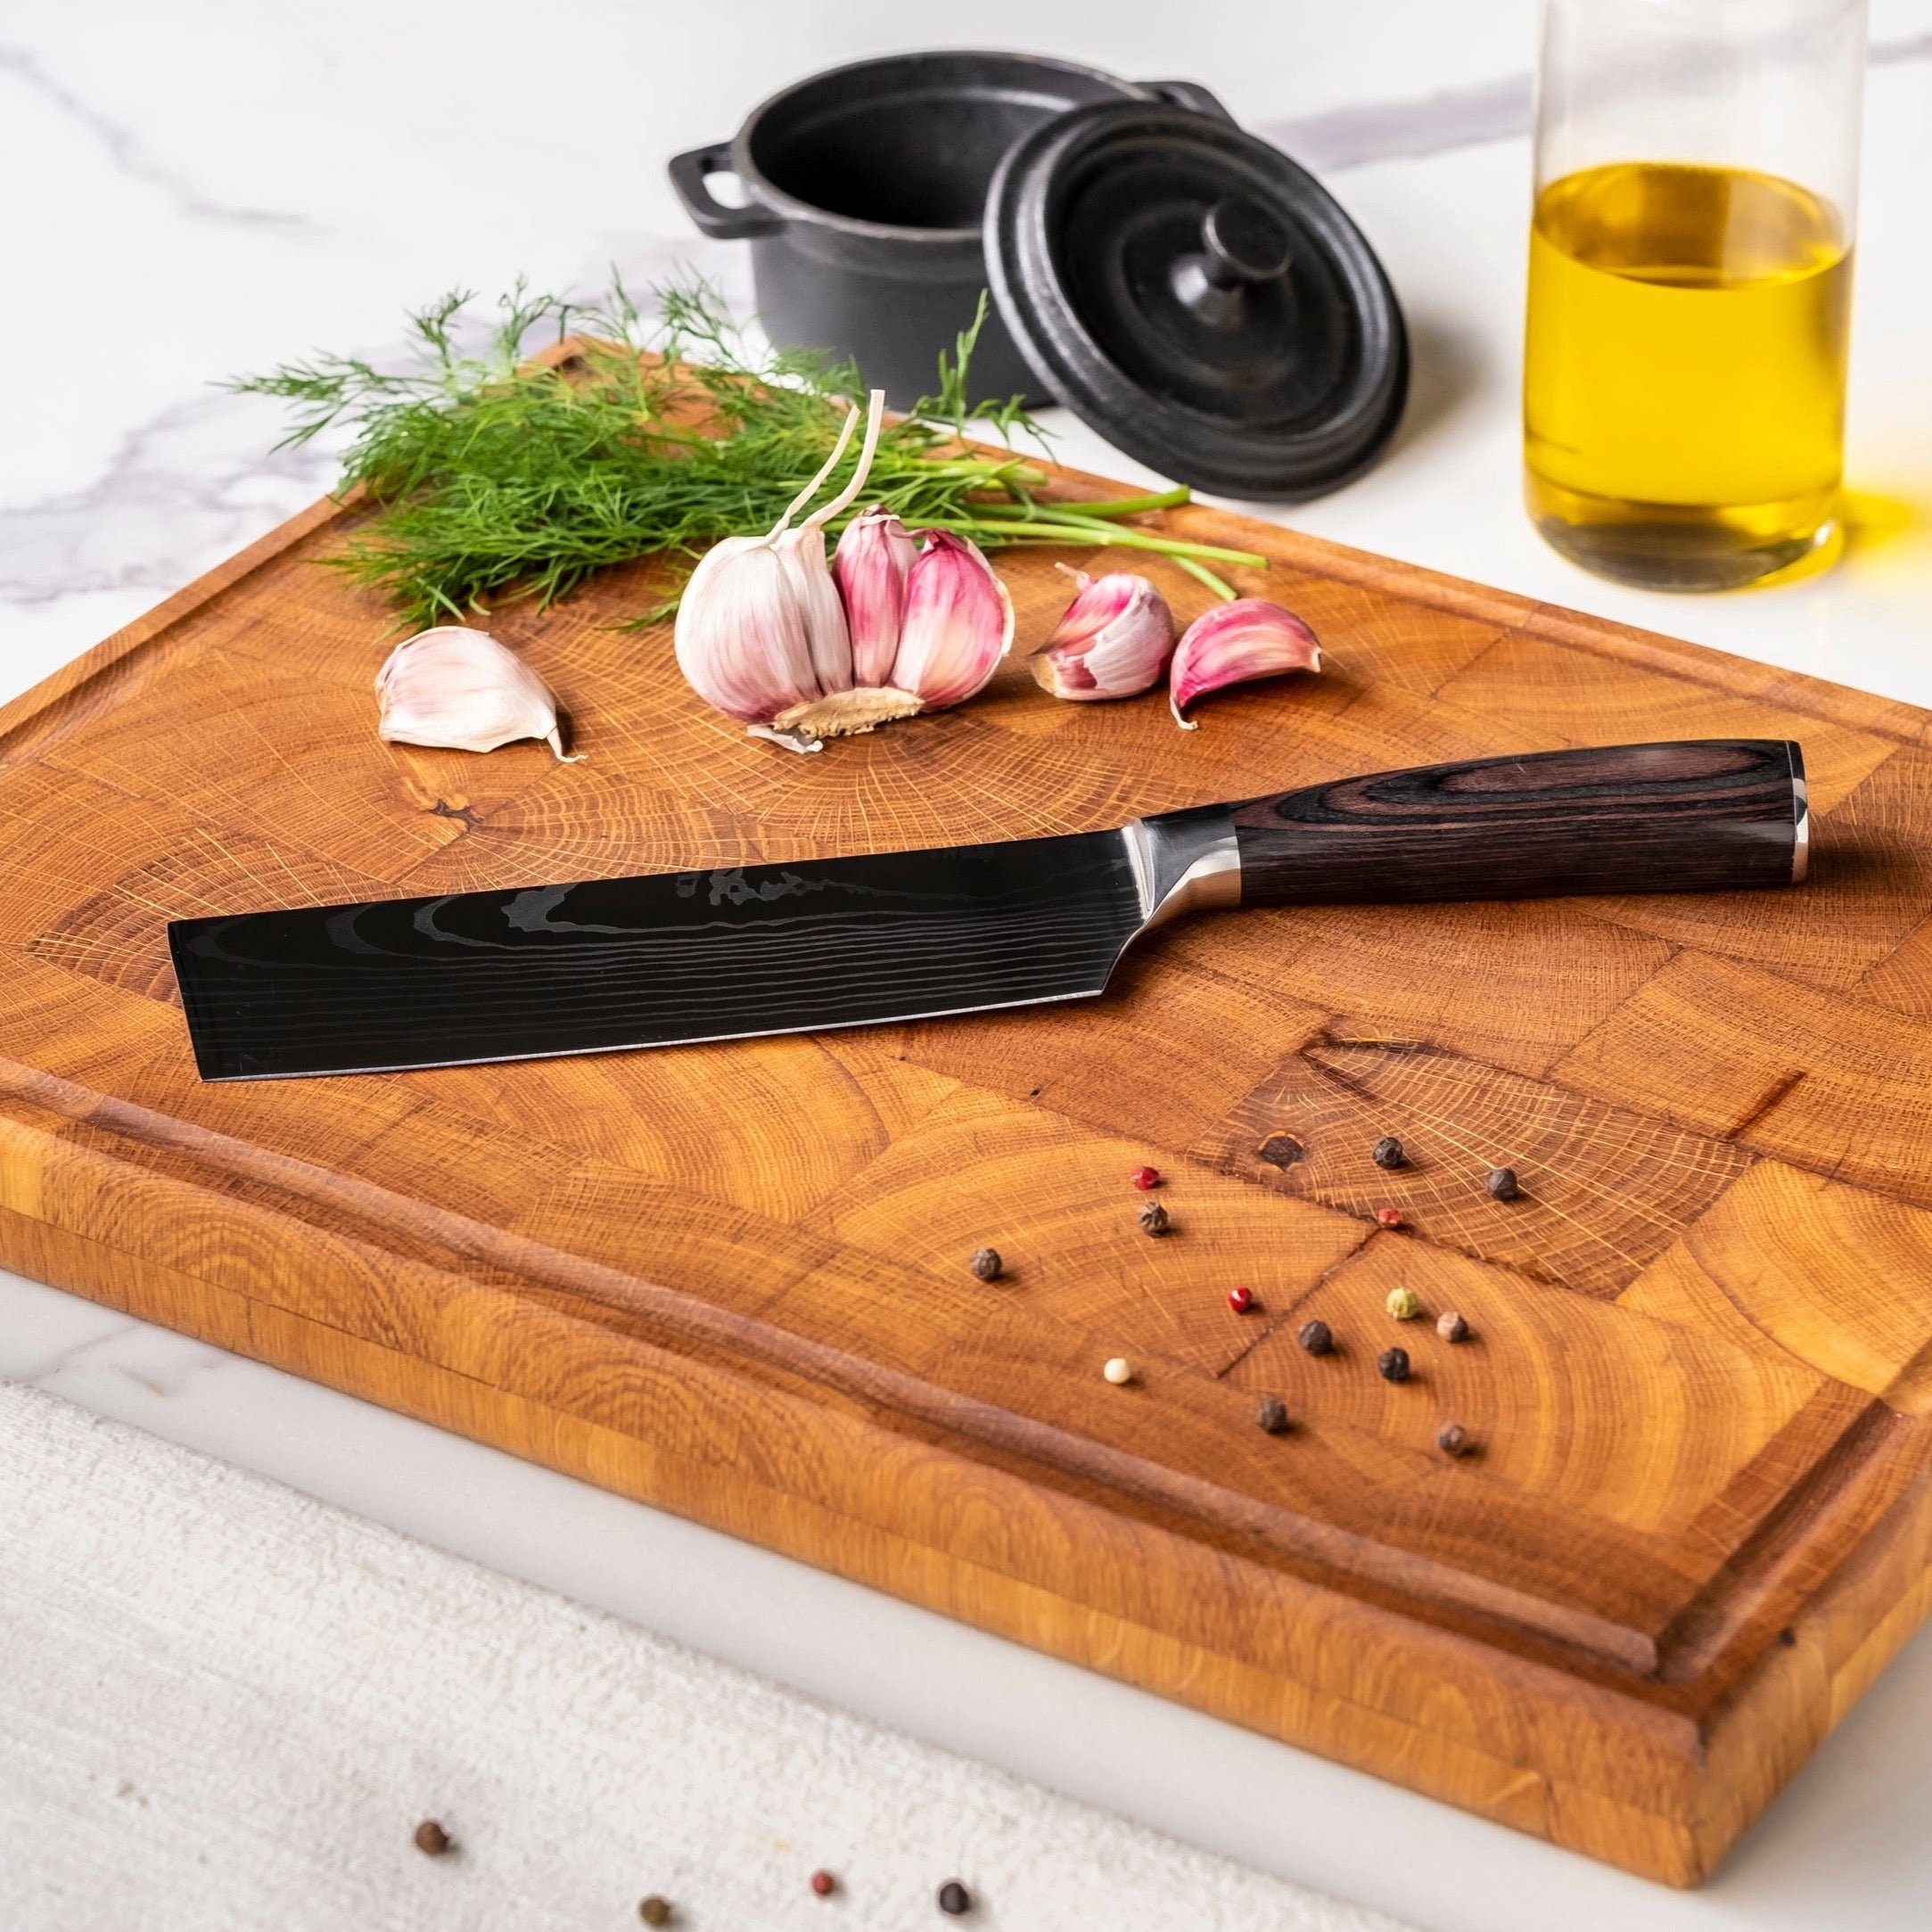 Set - Handgefertigt Japanisches 7-teiliges ins Messer-Set Detail Küchenmesser Messer, Japan Shinrai bis